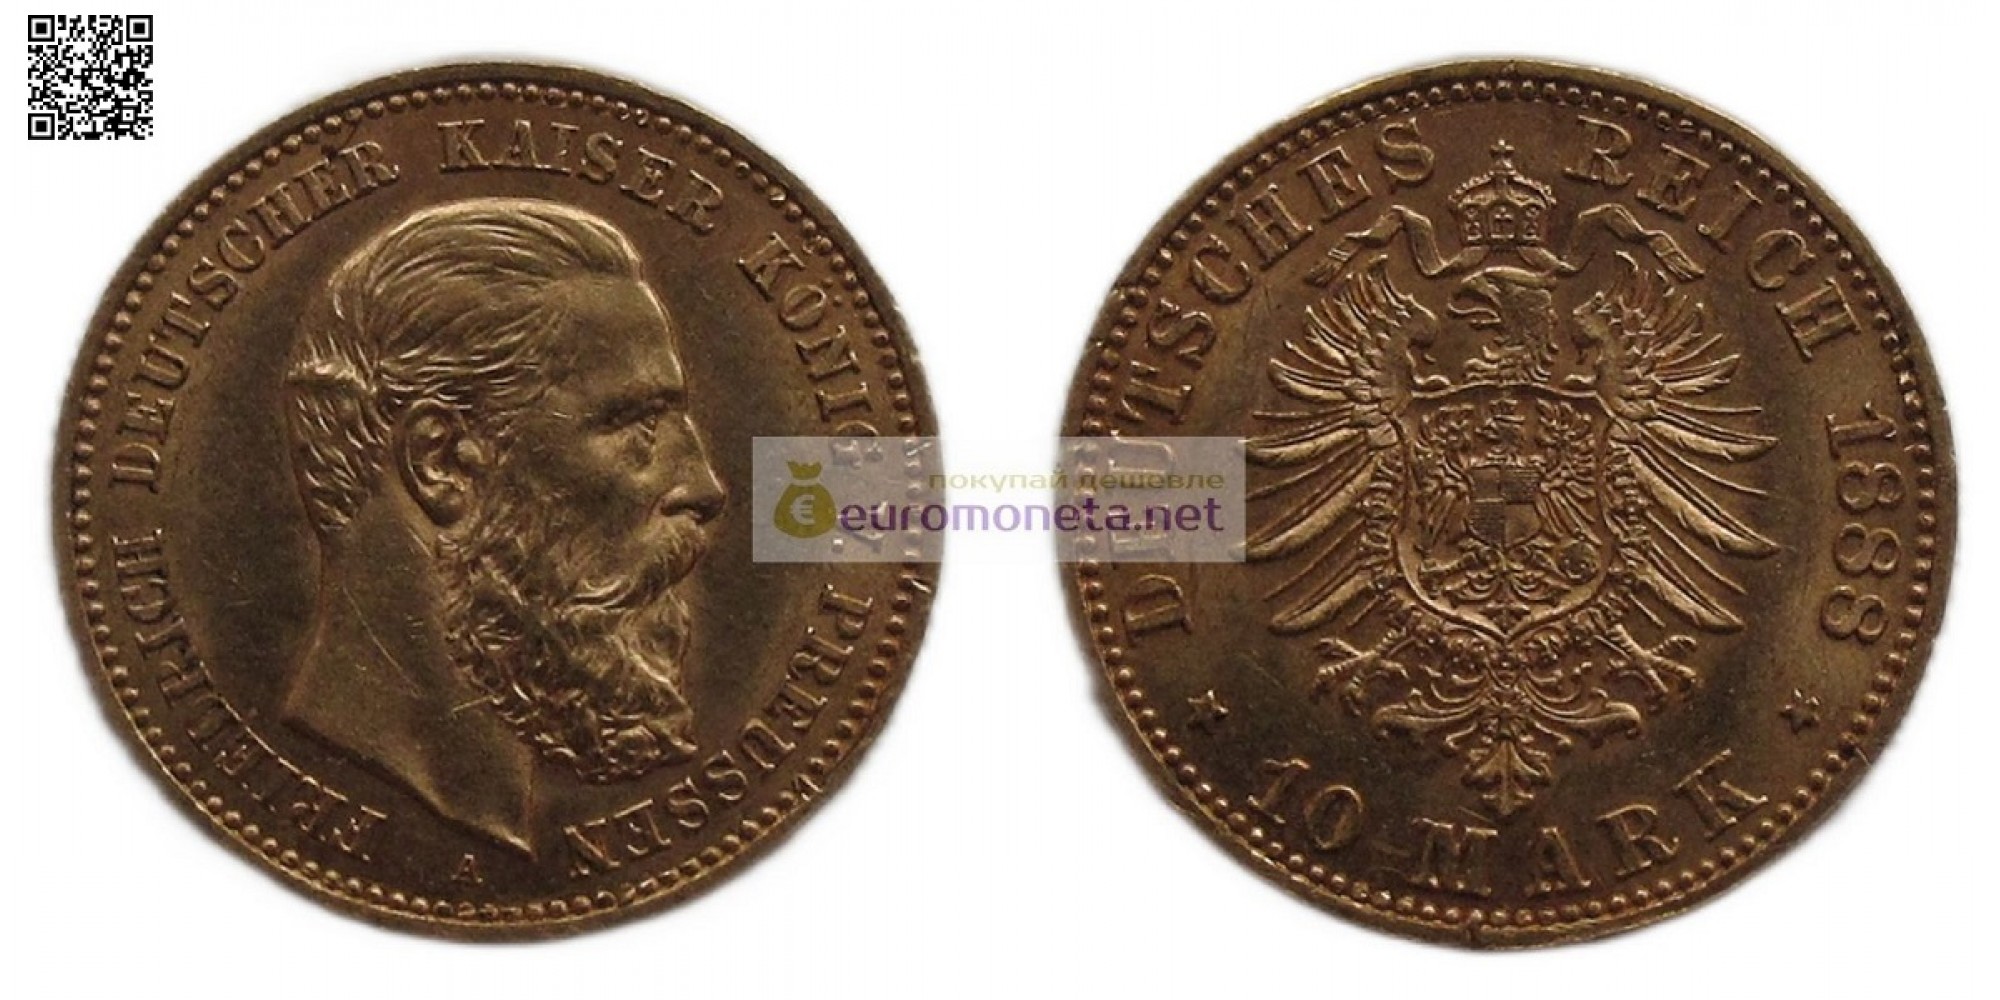 Германская империя Пруссия 10 марок 1888 год Фридрих III. Золото